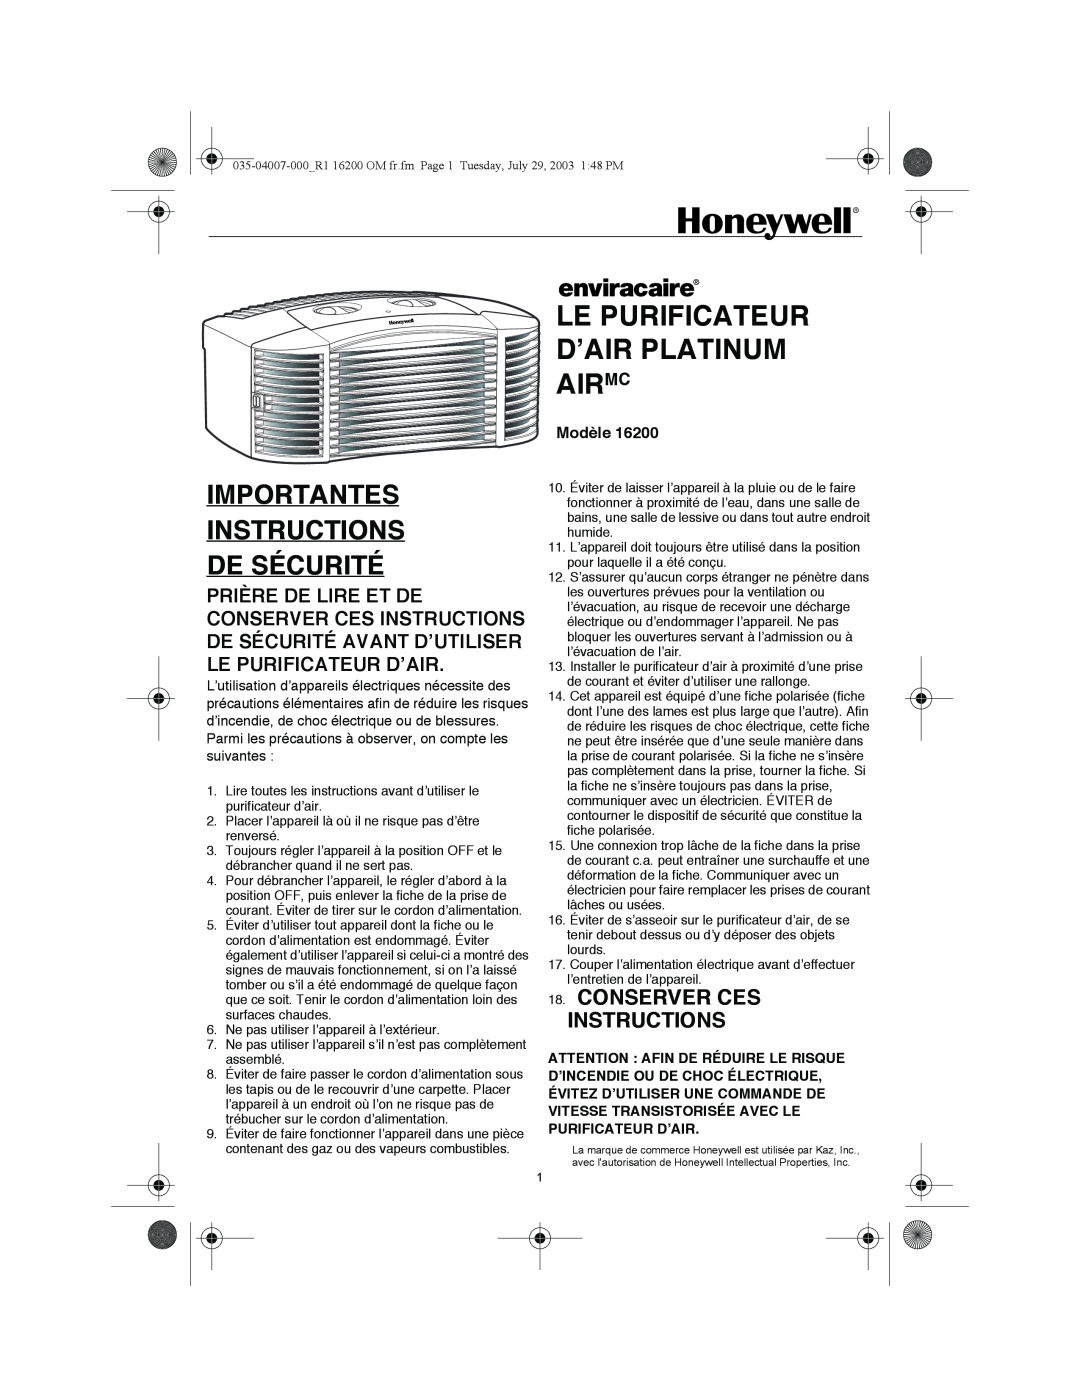 Honeywell 16200 Le Purificateur D’Air Platinum Airmc, Importantes Instructions De Sécurité, Conserver Ces Instructions 